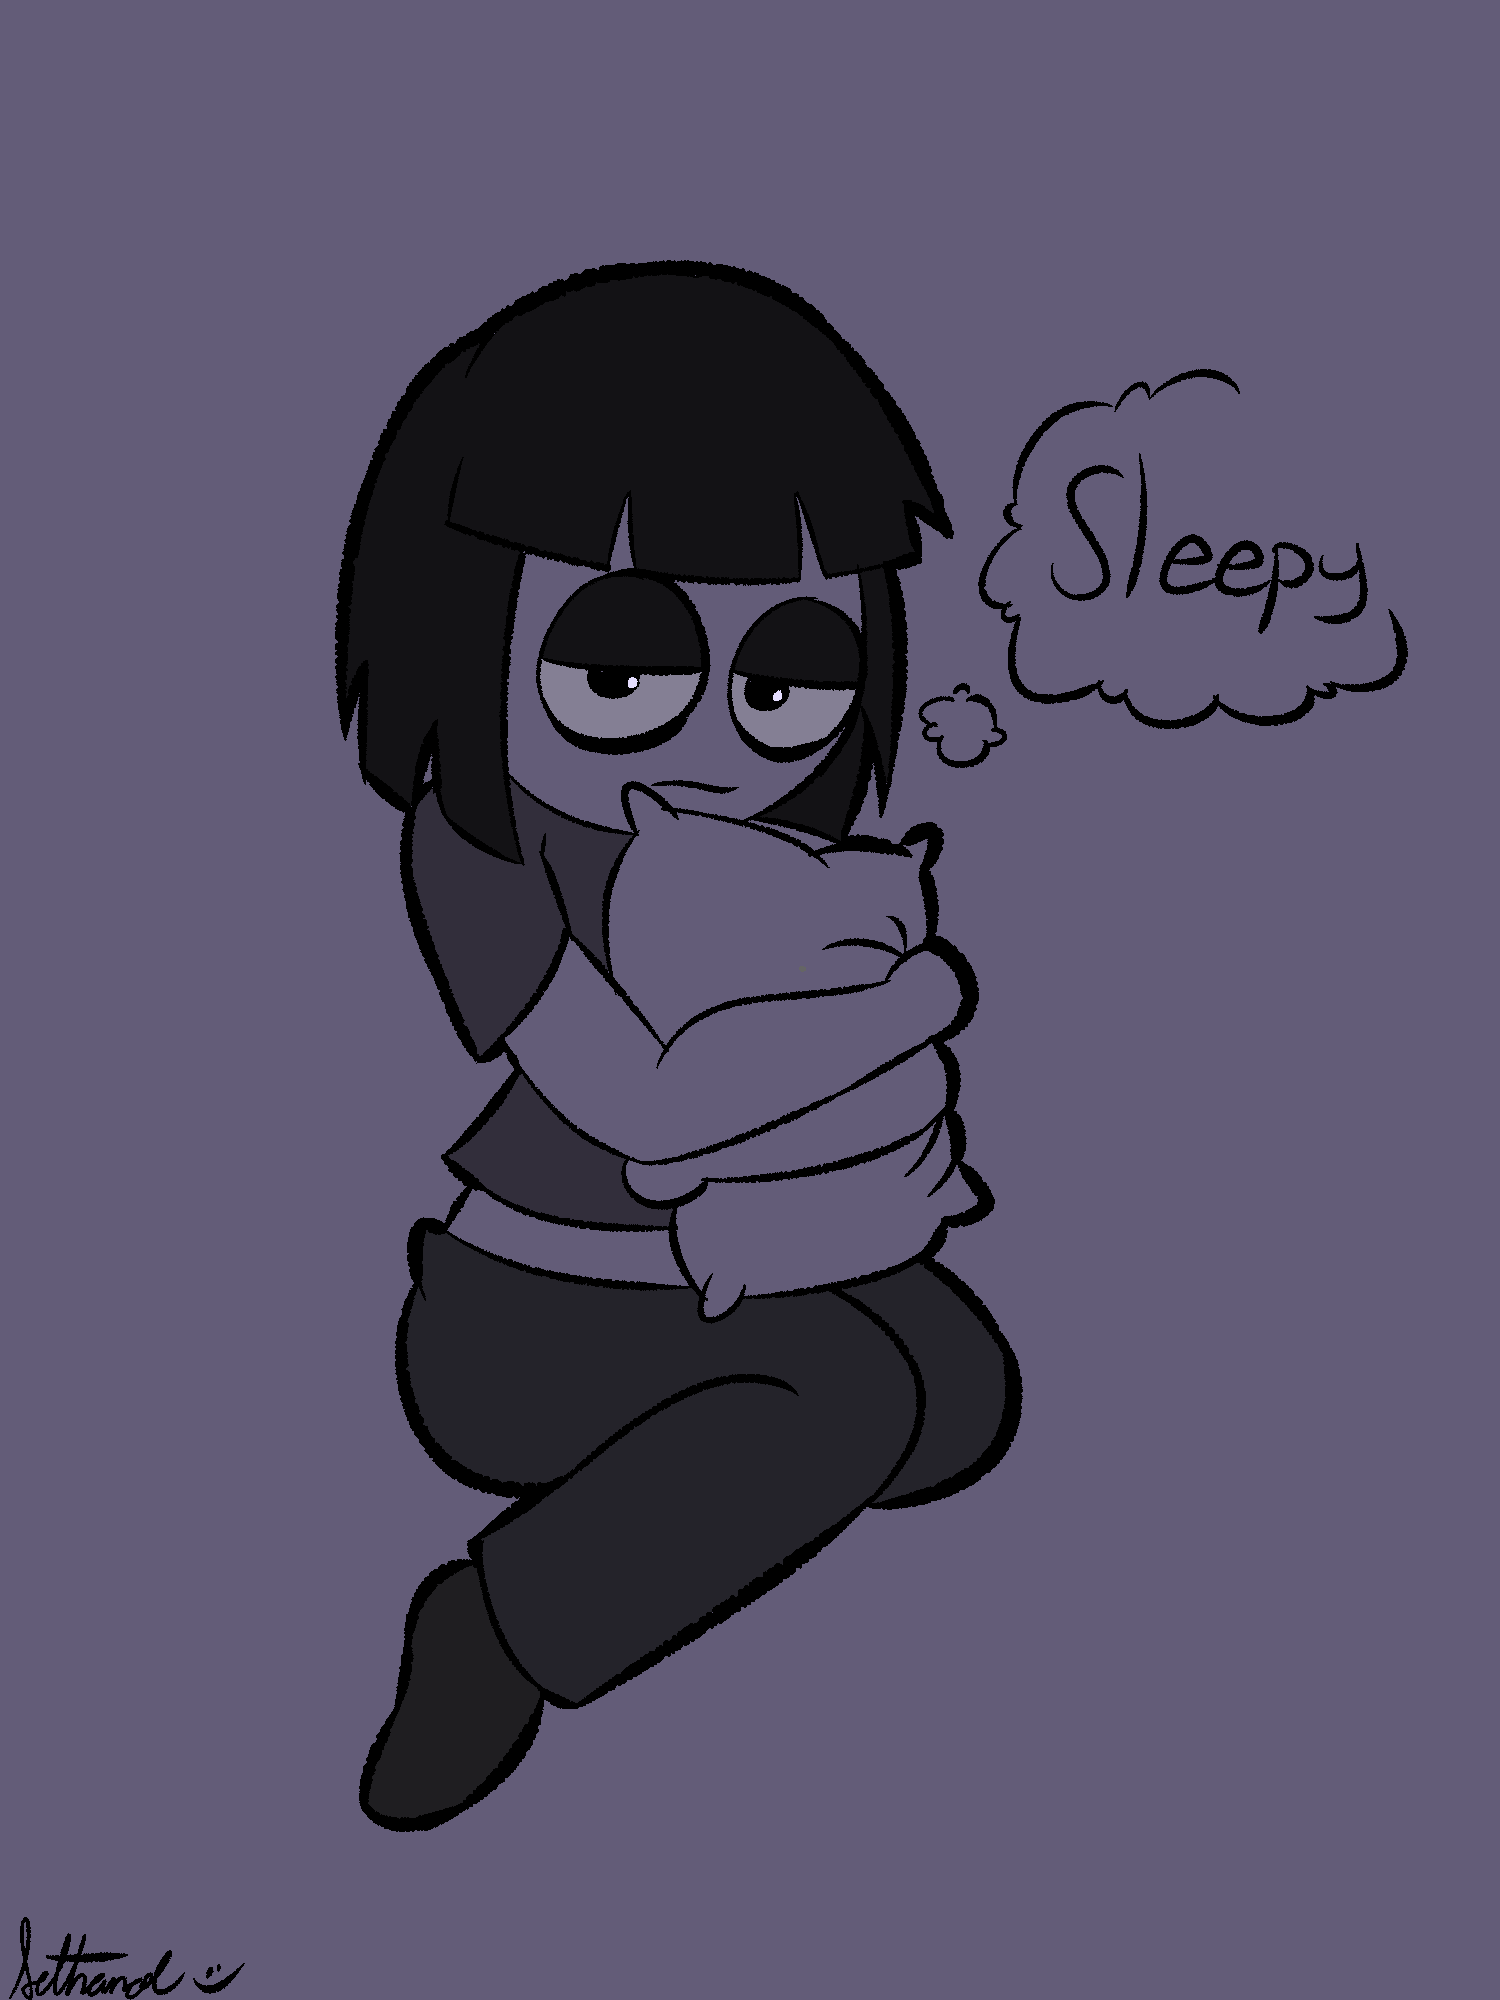 Sleepy Creepy Susie